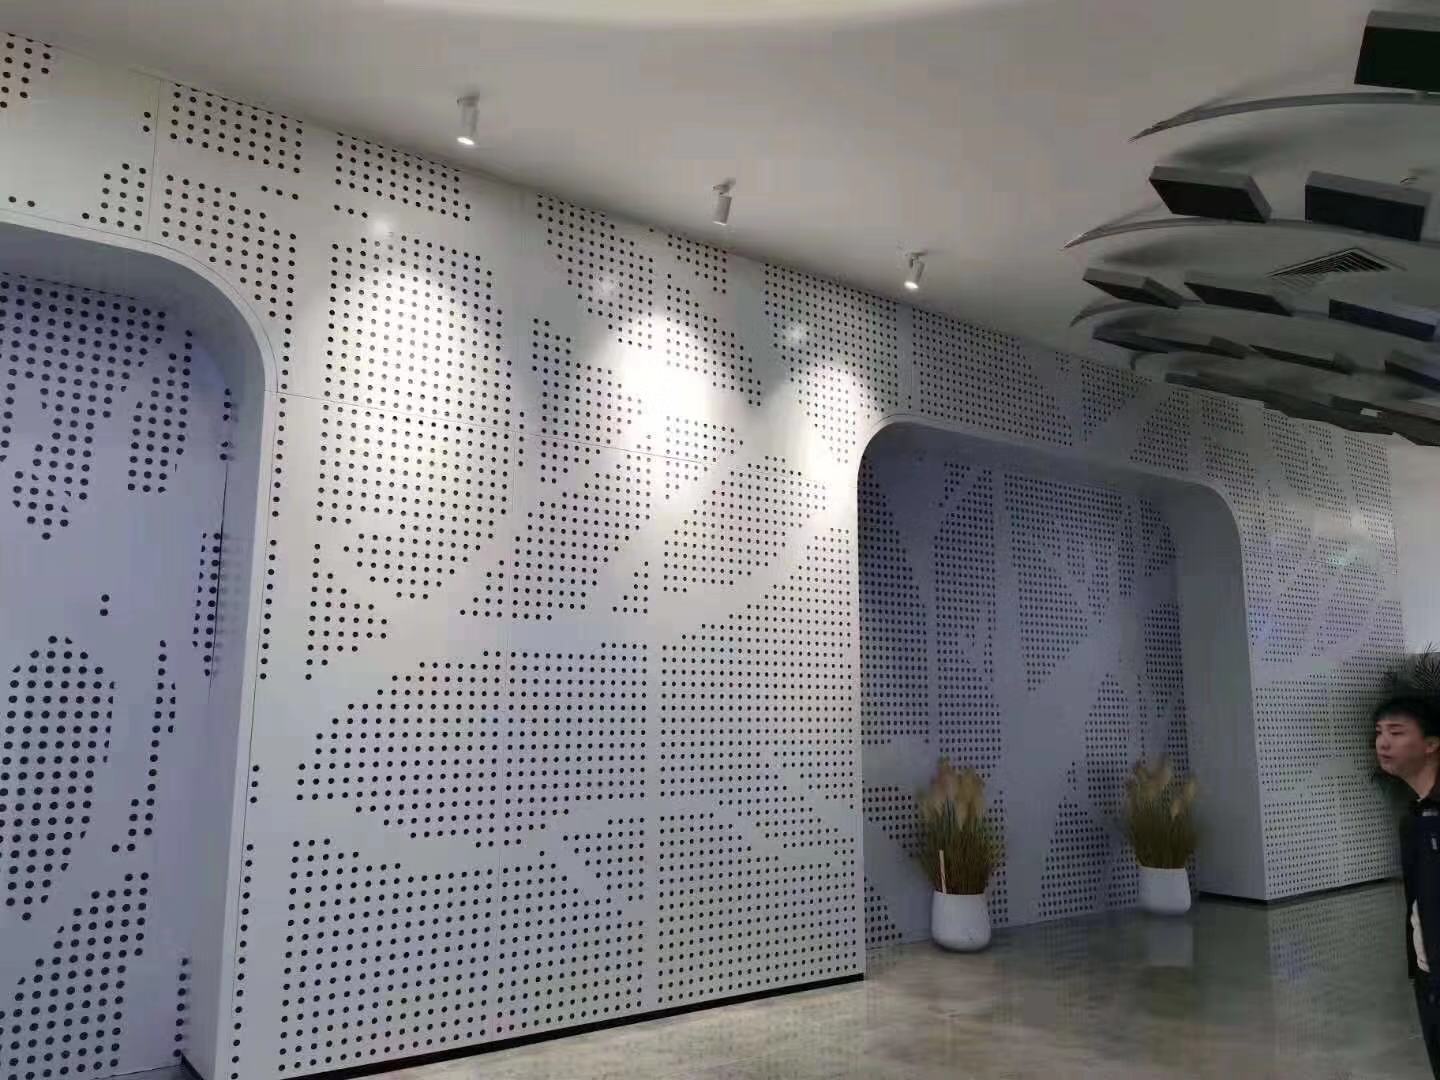 德普龙不规则穿孔铝单板白色造型铝单板幕墙案例完工效果图